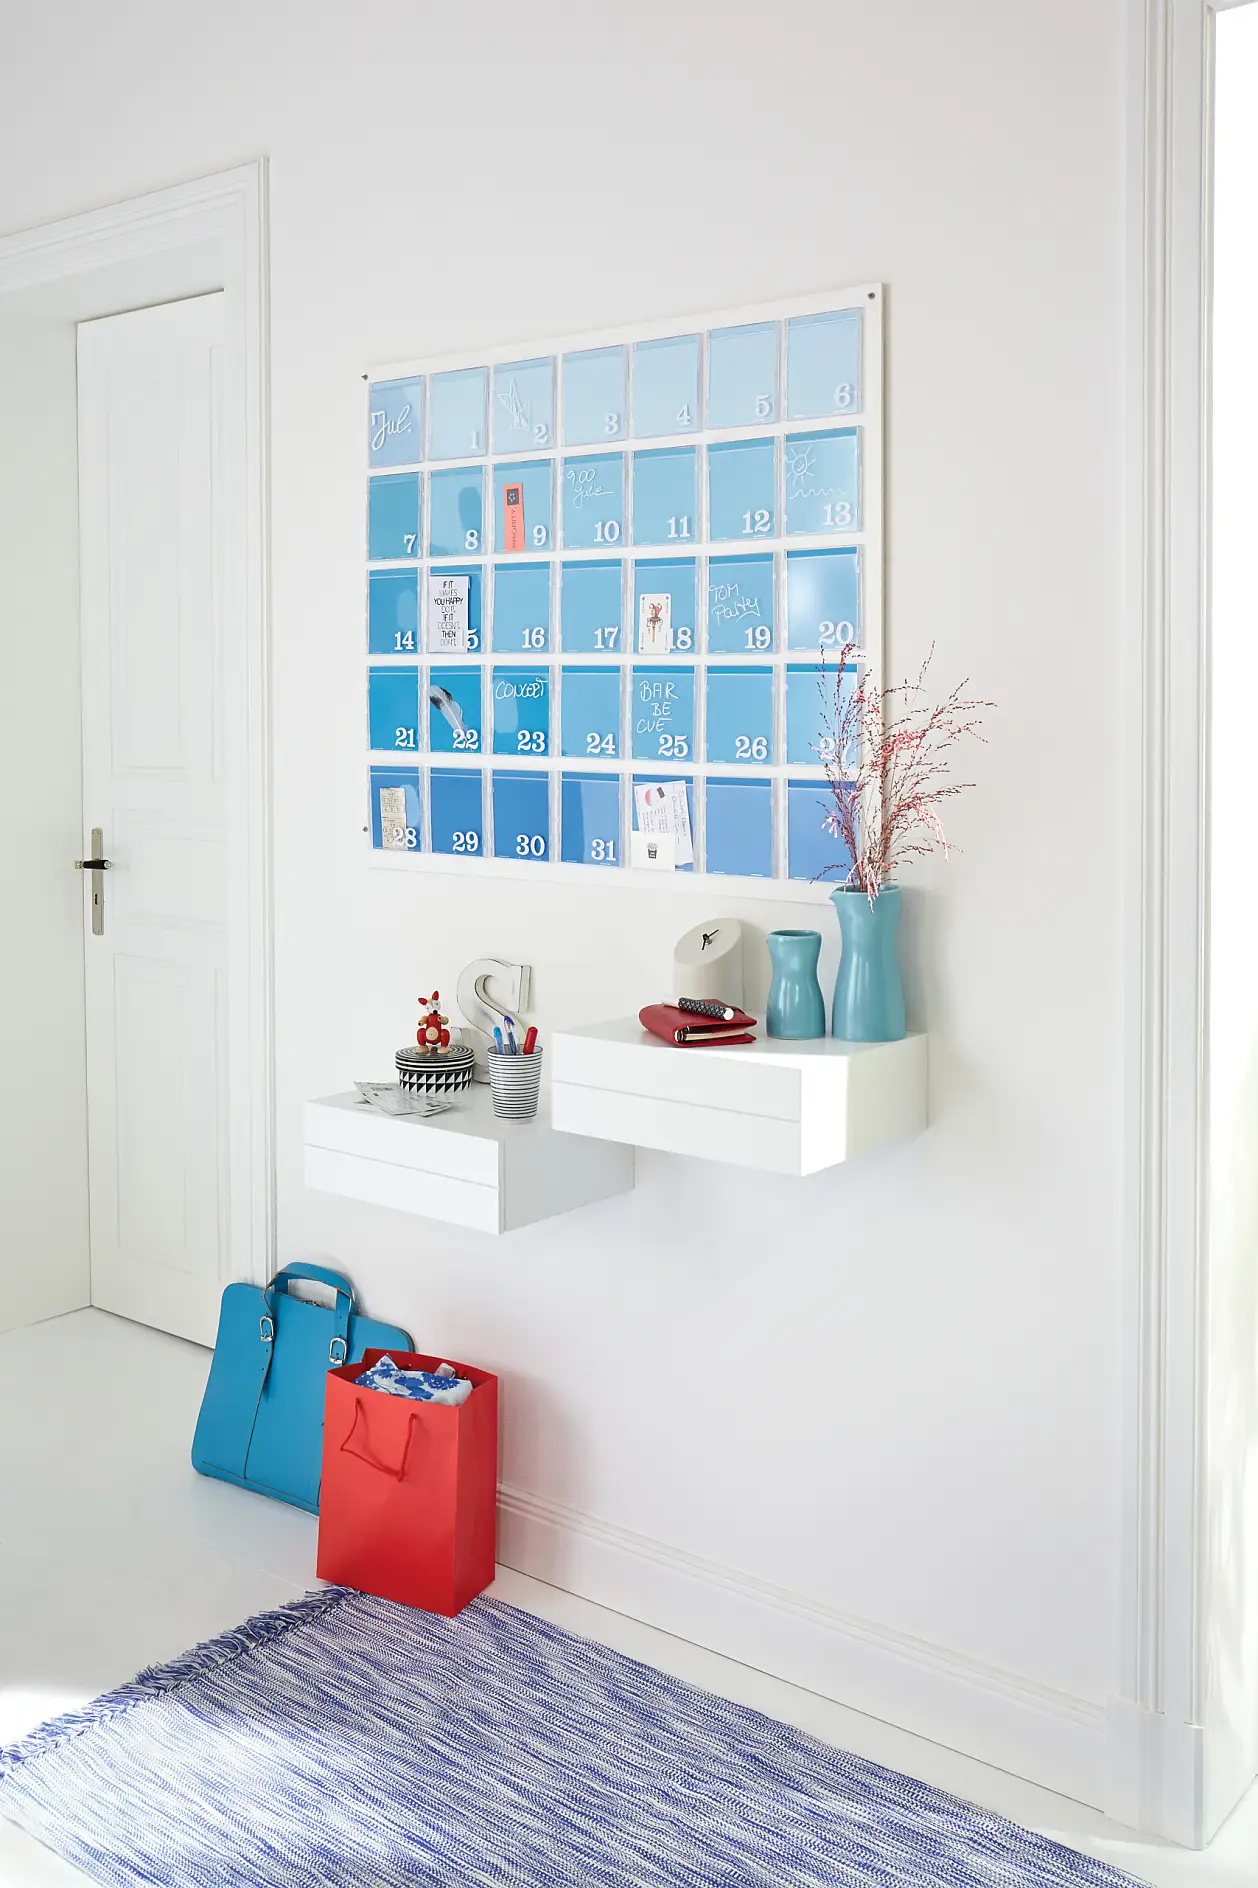 Bucurați-vă de noul dvs. calendar albastru de perete din holul dvs.!